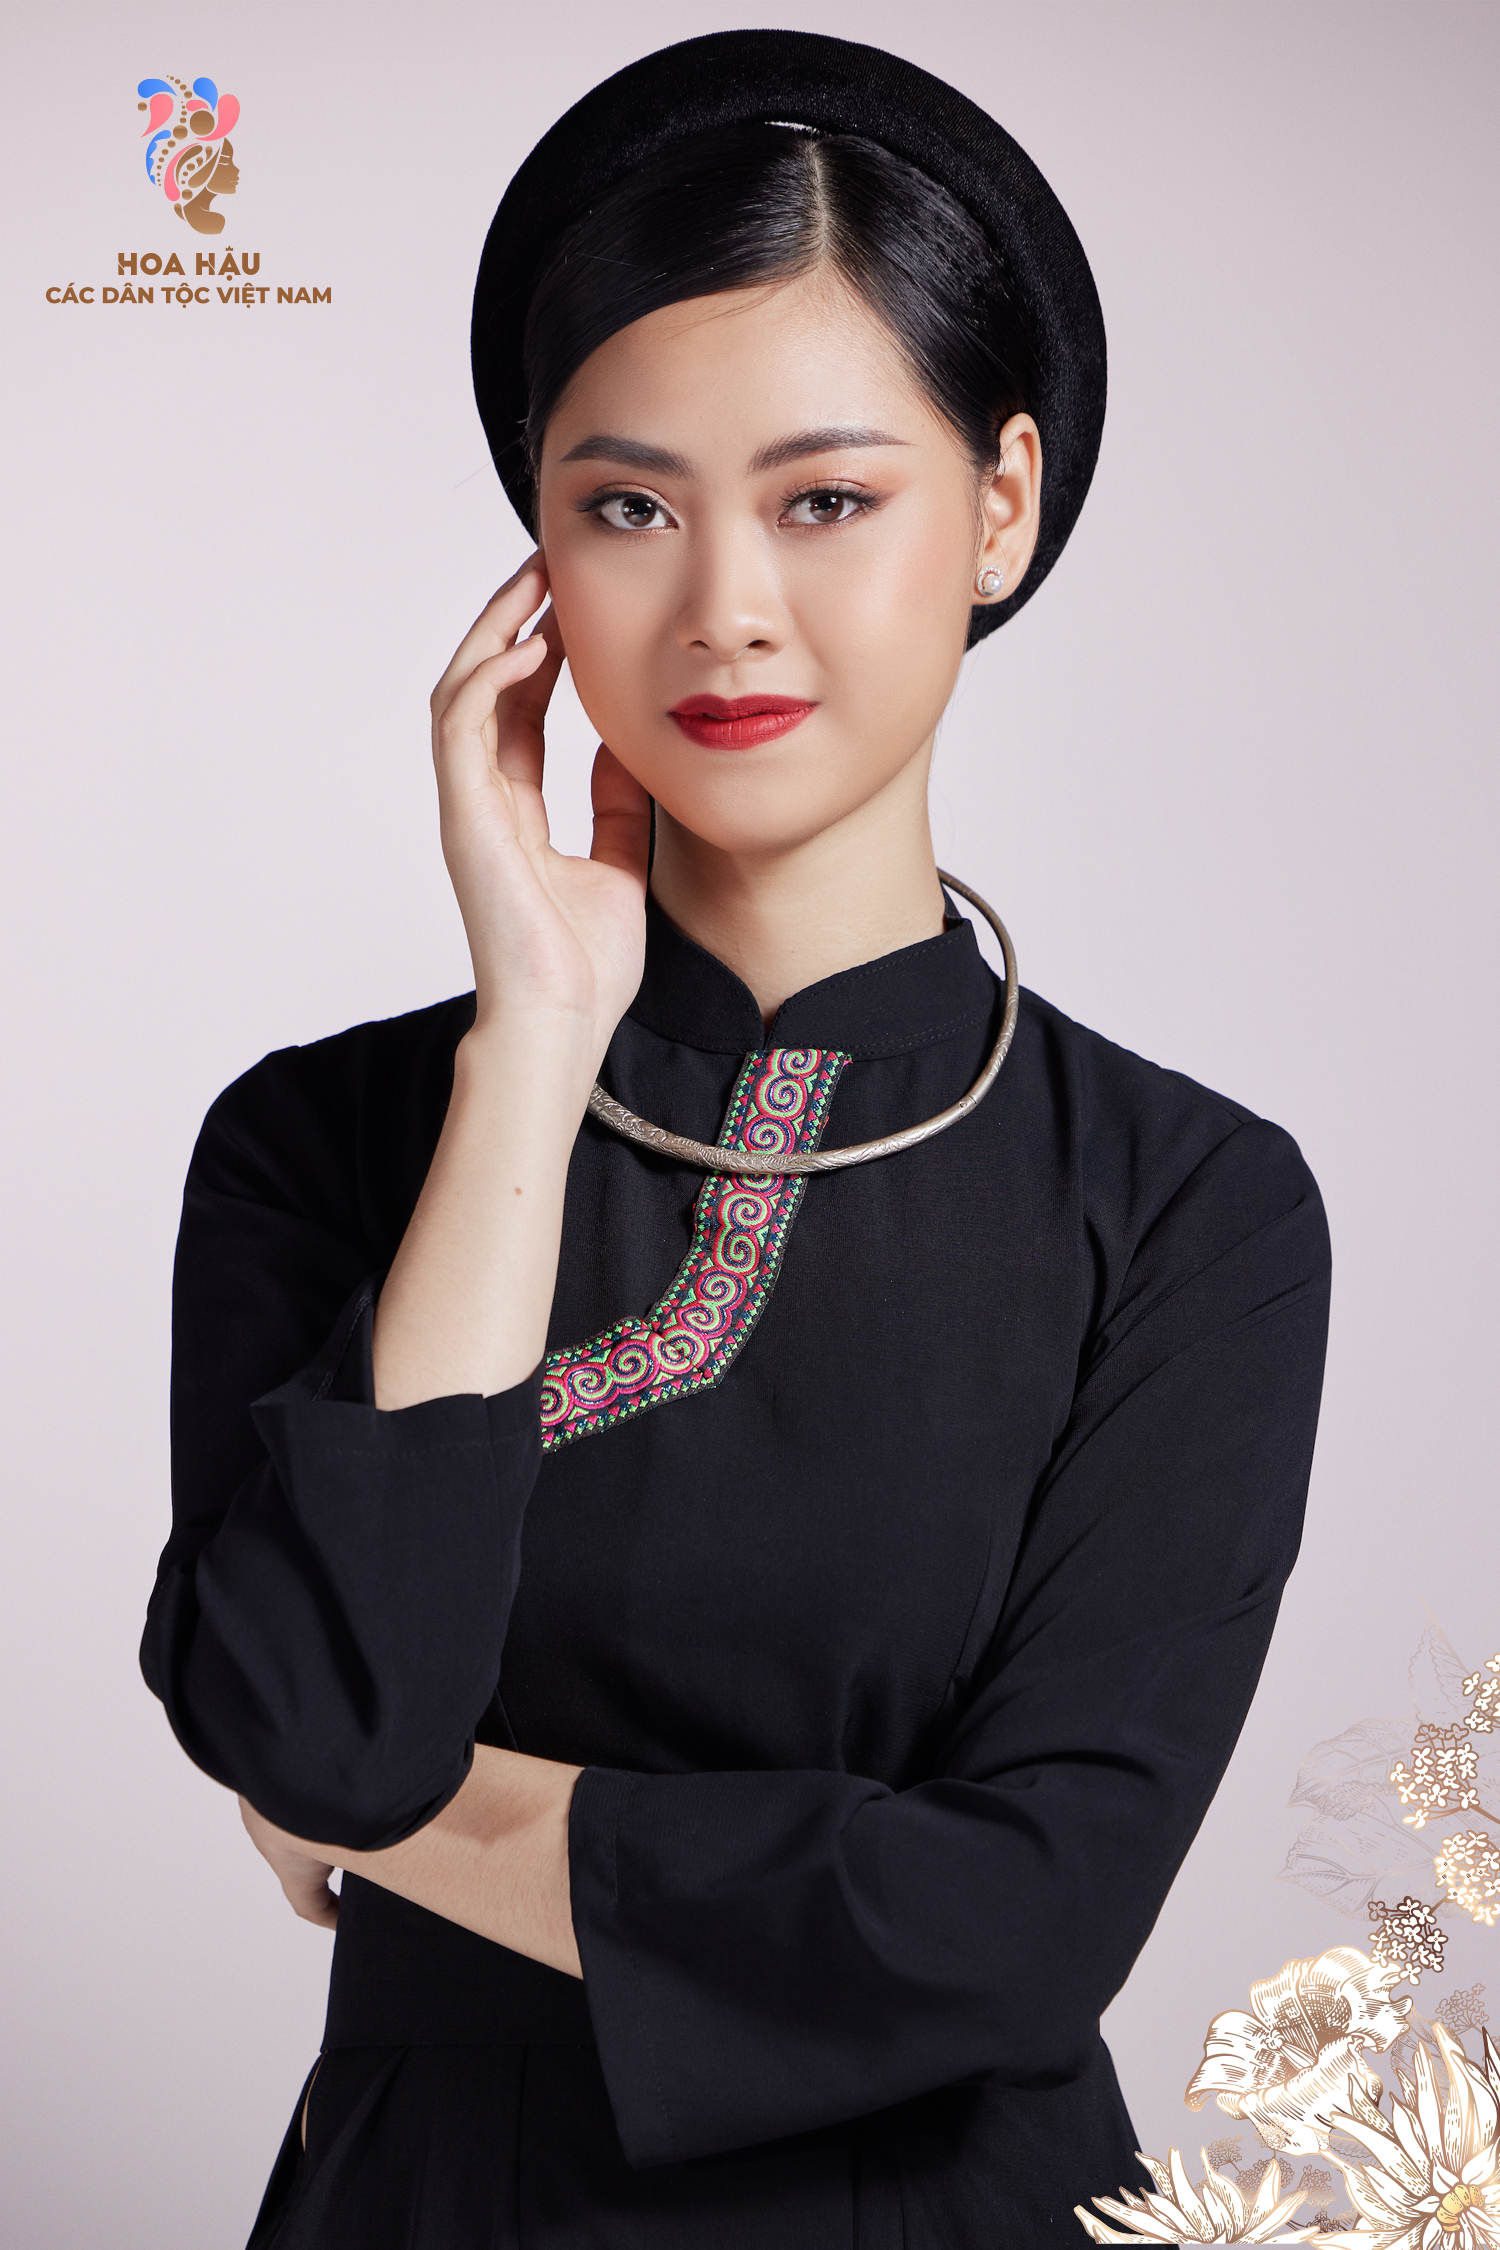 30 thí sinh Hoa hậu các dân tộc Việt Nam duyên dáng trong trang phục truyền thống - Ảnh 10.